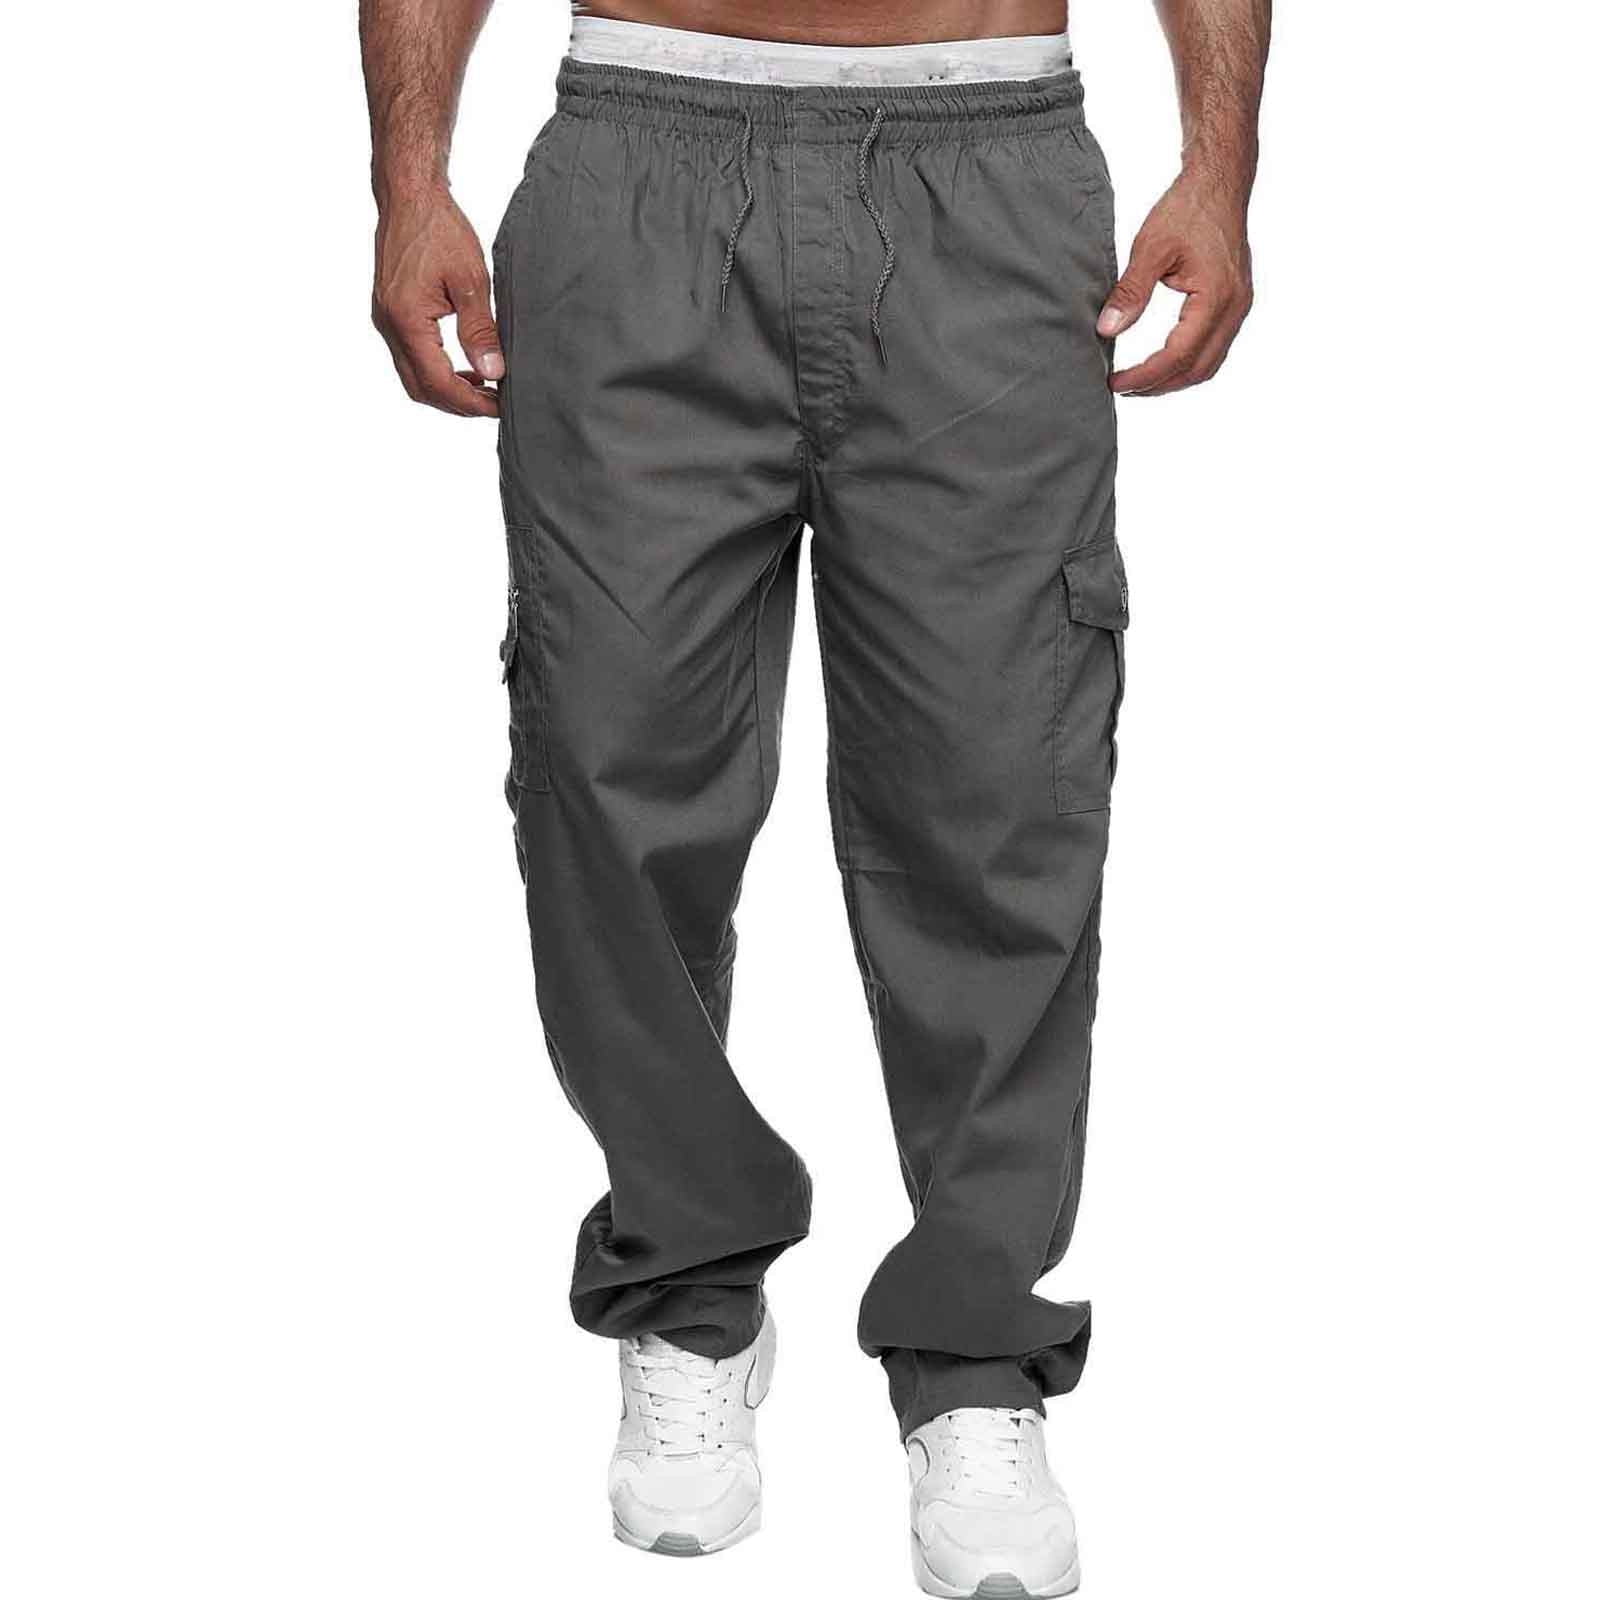 Outfmvch Cargo Pants for Men Men's Pants Men's Multi-pocket Pants ...